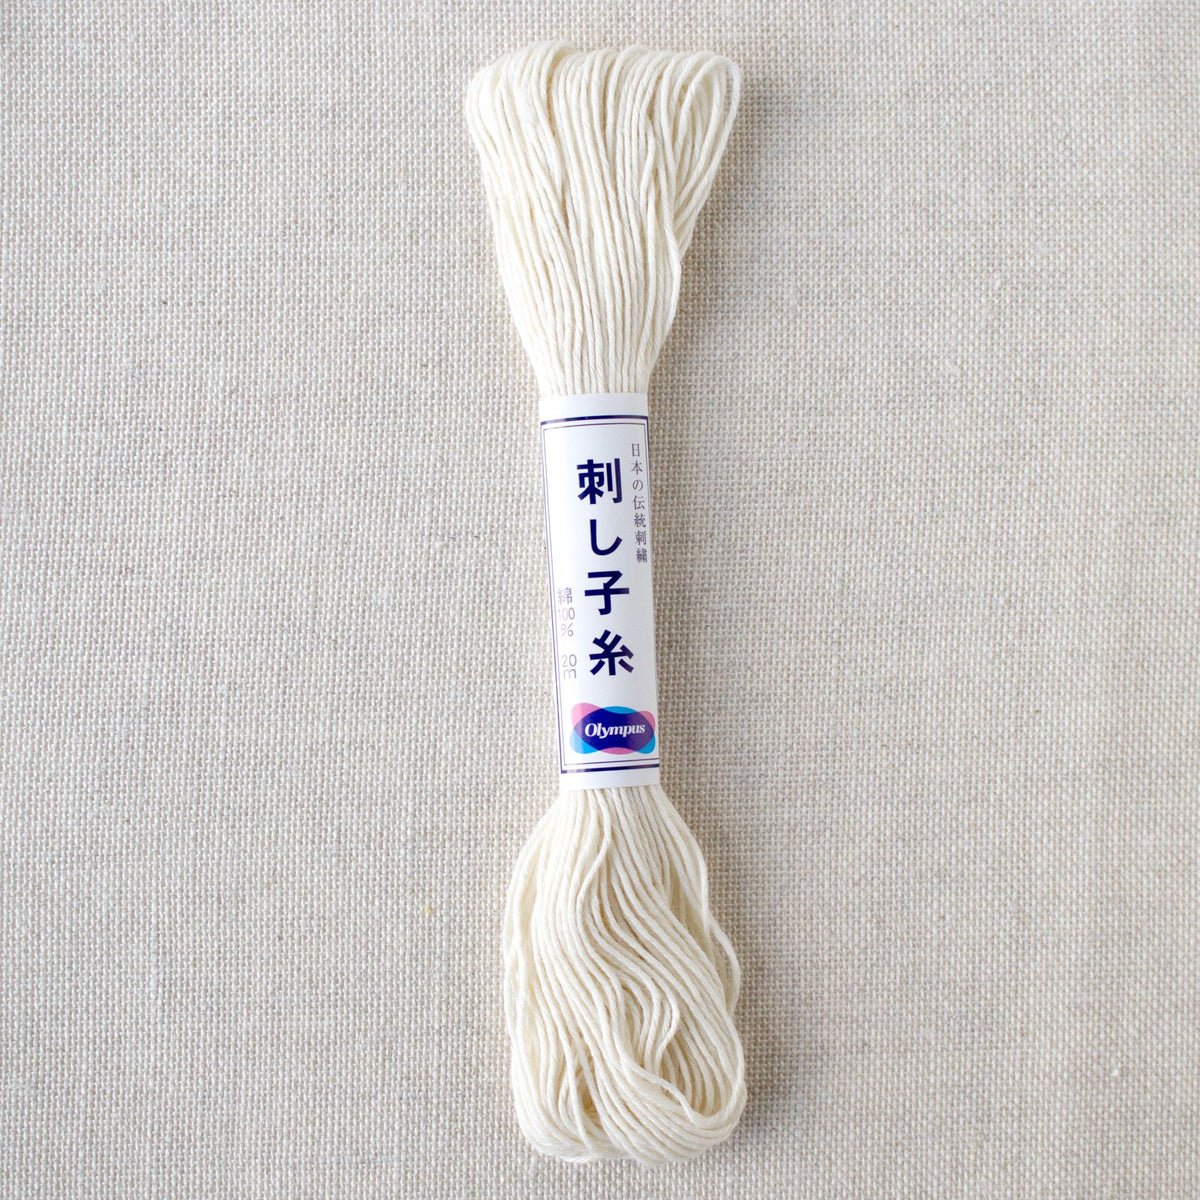 Japanese Sashiko Thread - Off White (#2)